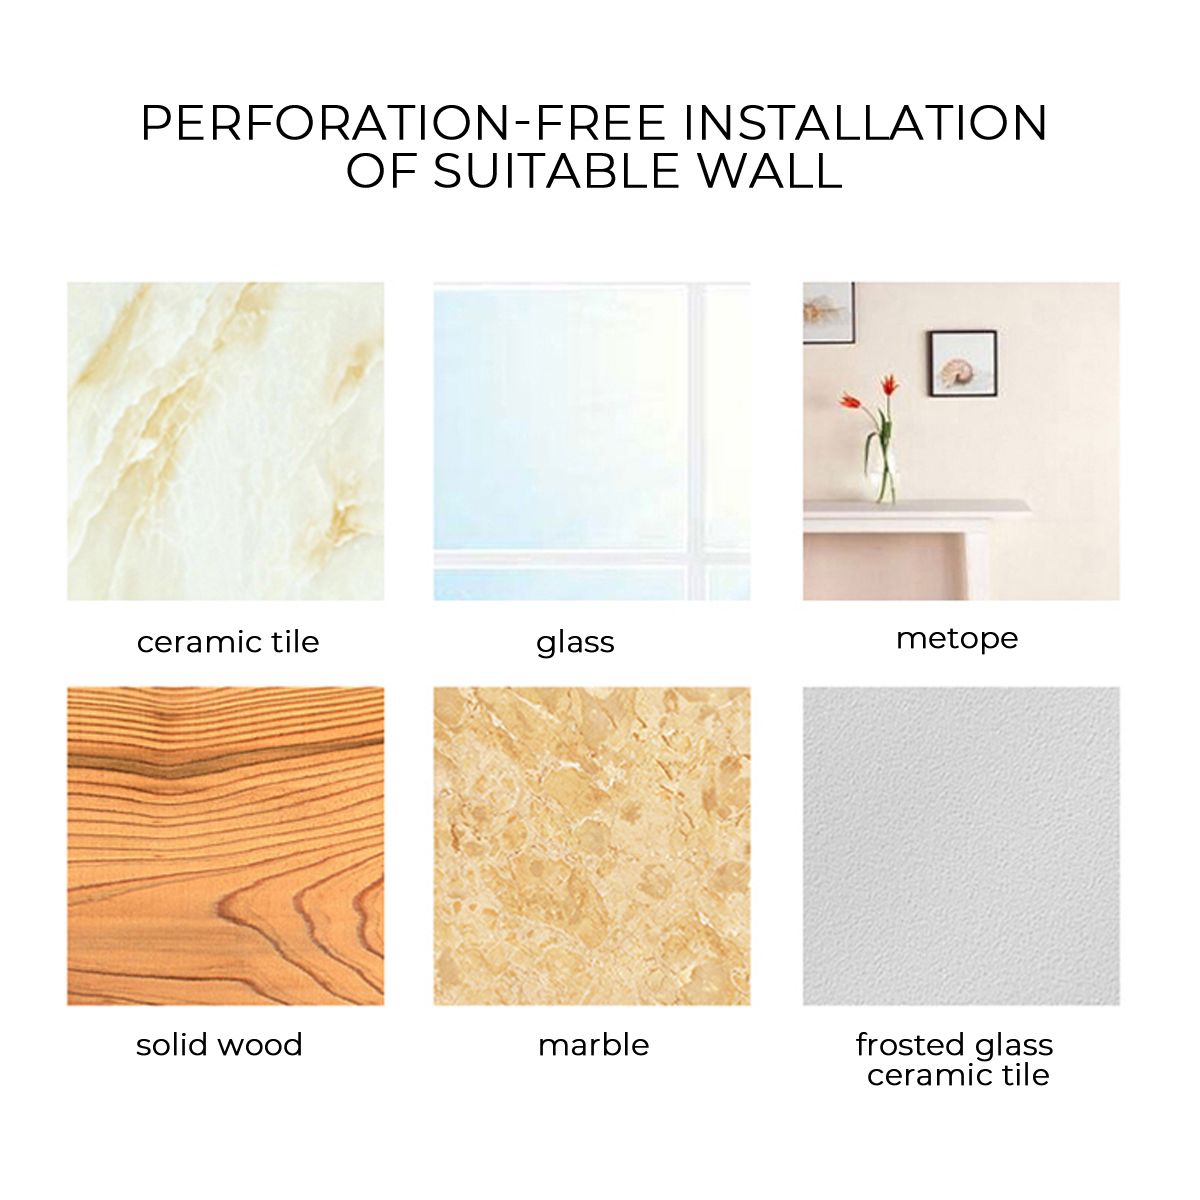 04510m-PVC-Wallpaper-Flower-Pattern-Dustproof-Moisture-Proof-Waterproof-Wallpaper-1738720